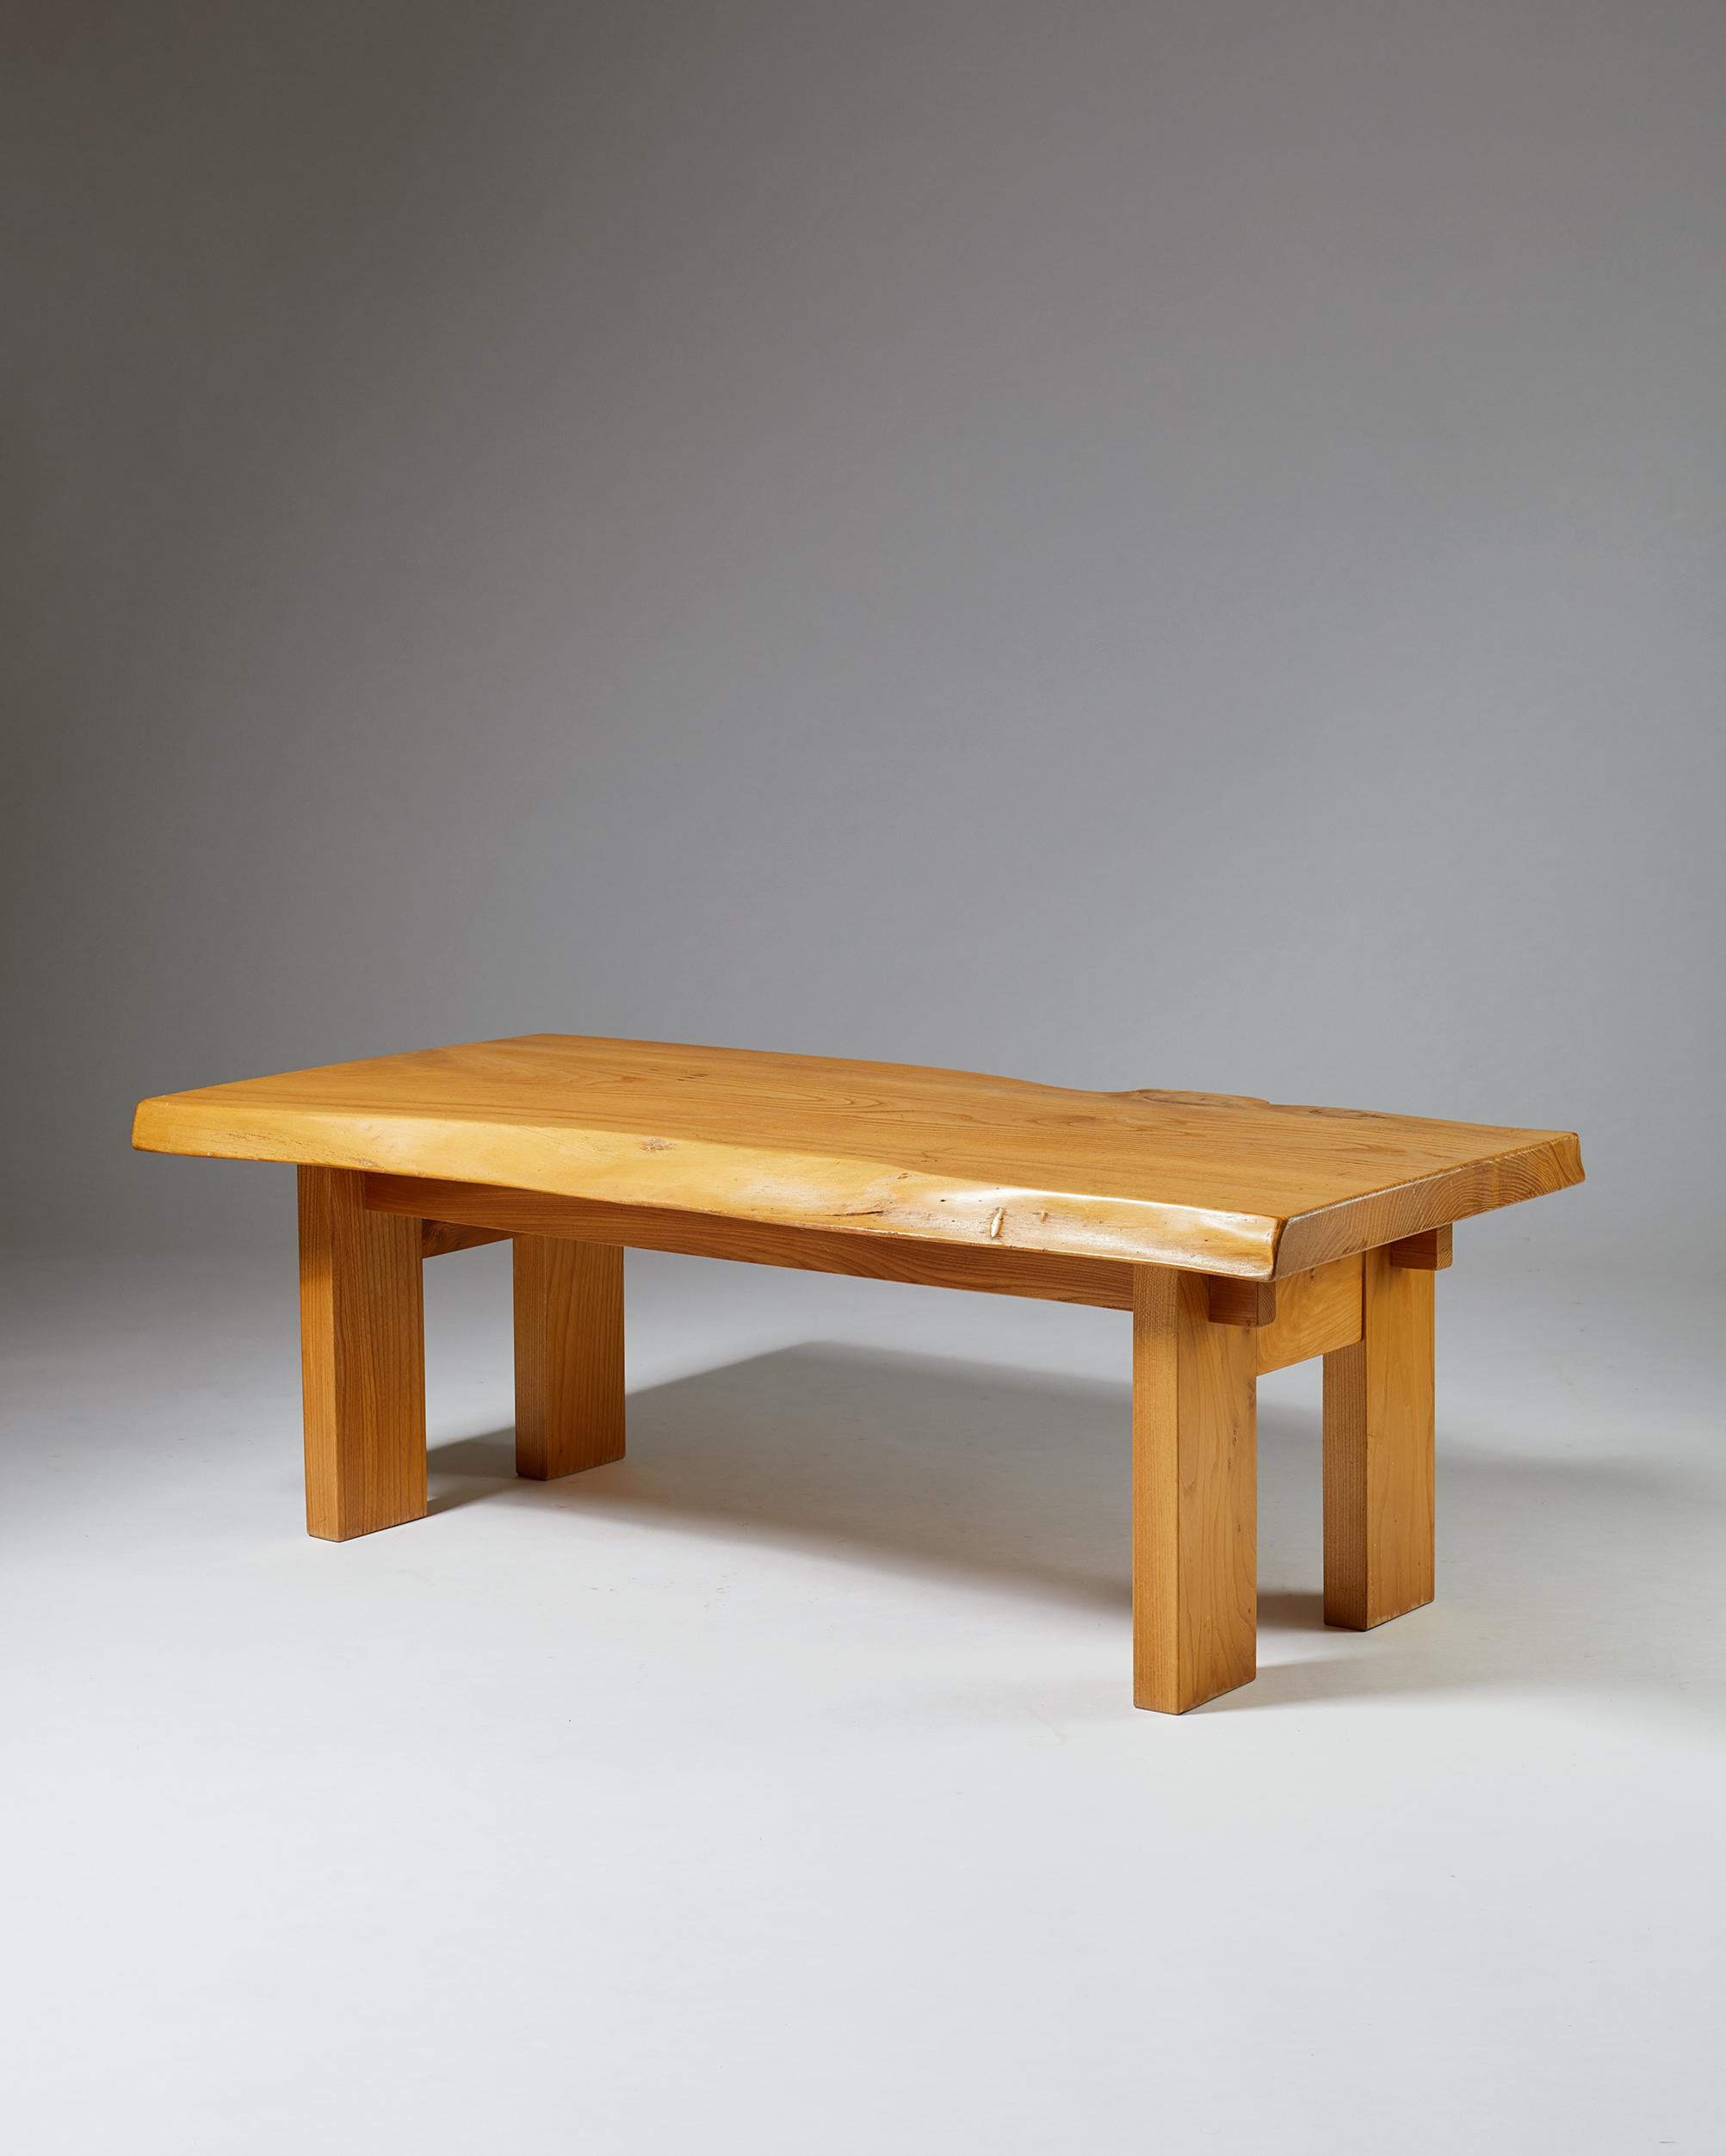 Bench/table designed by Sigvard Nilsson for Söwe-Konst,
Sweden, 1970s.

Elm.

Dimensions: 
L: 137 cm/ 54